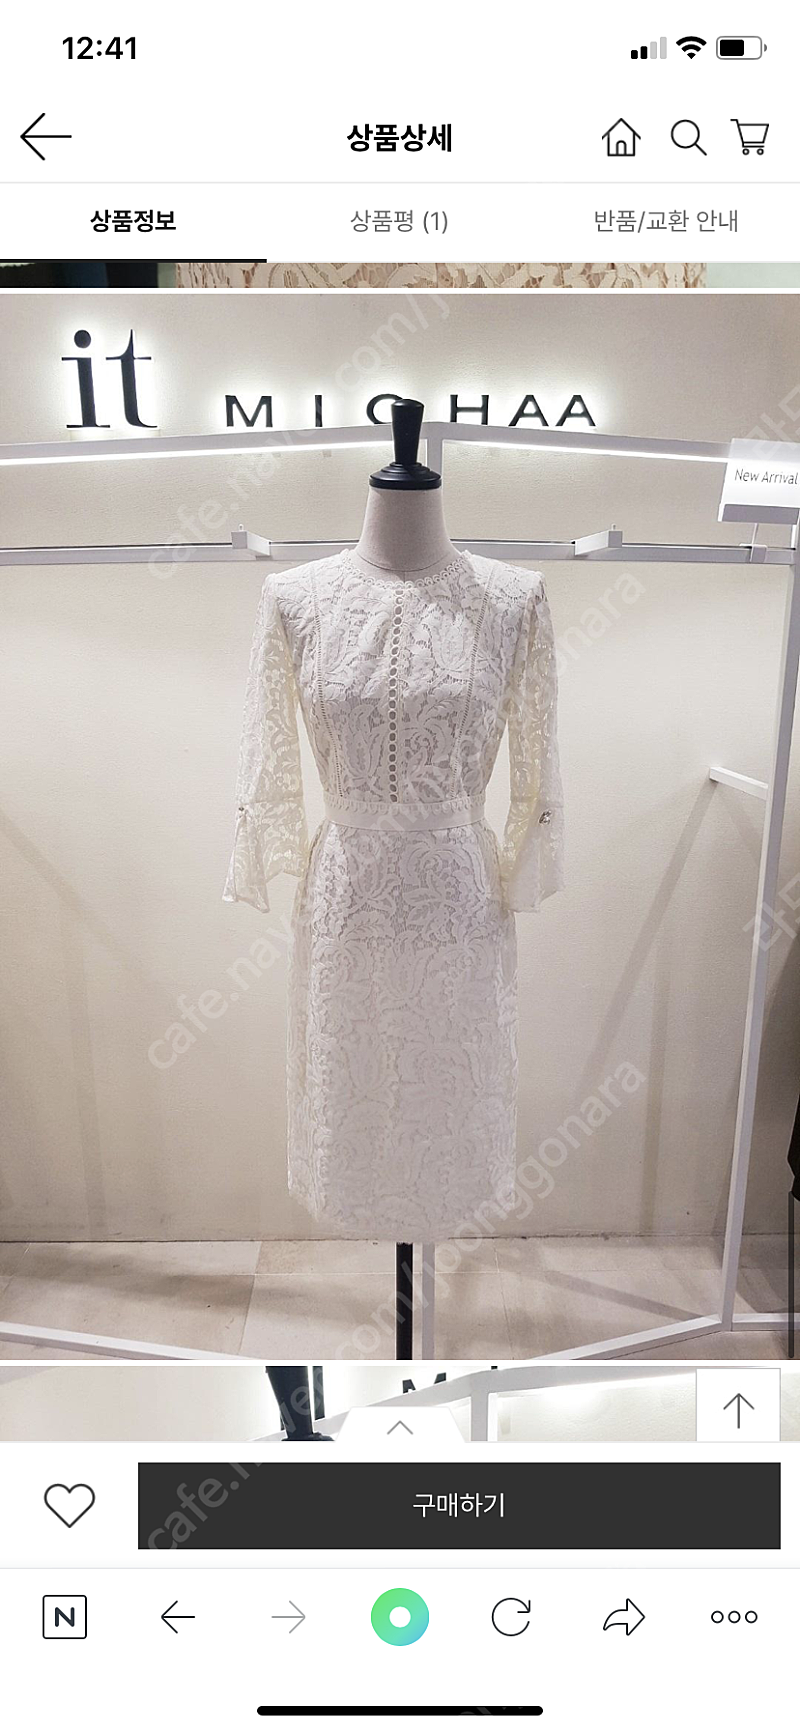 정가 28만원/ 잇미샤 셀프웨딩 드레스, 피로연드레스, 브라이덜샤워 드레스, 돌잔치 드레스